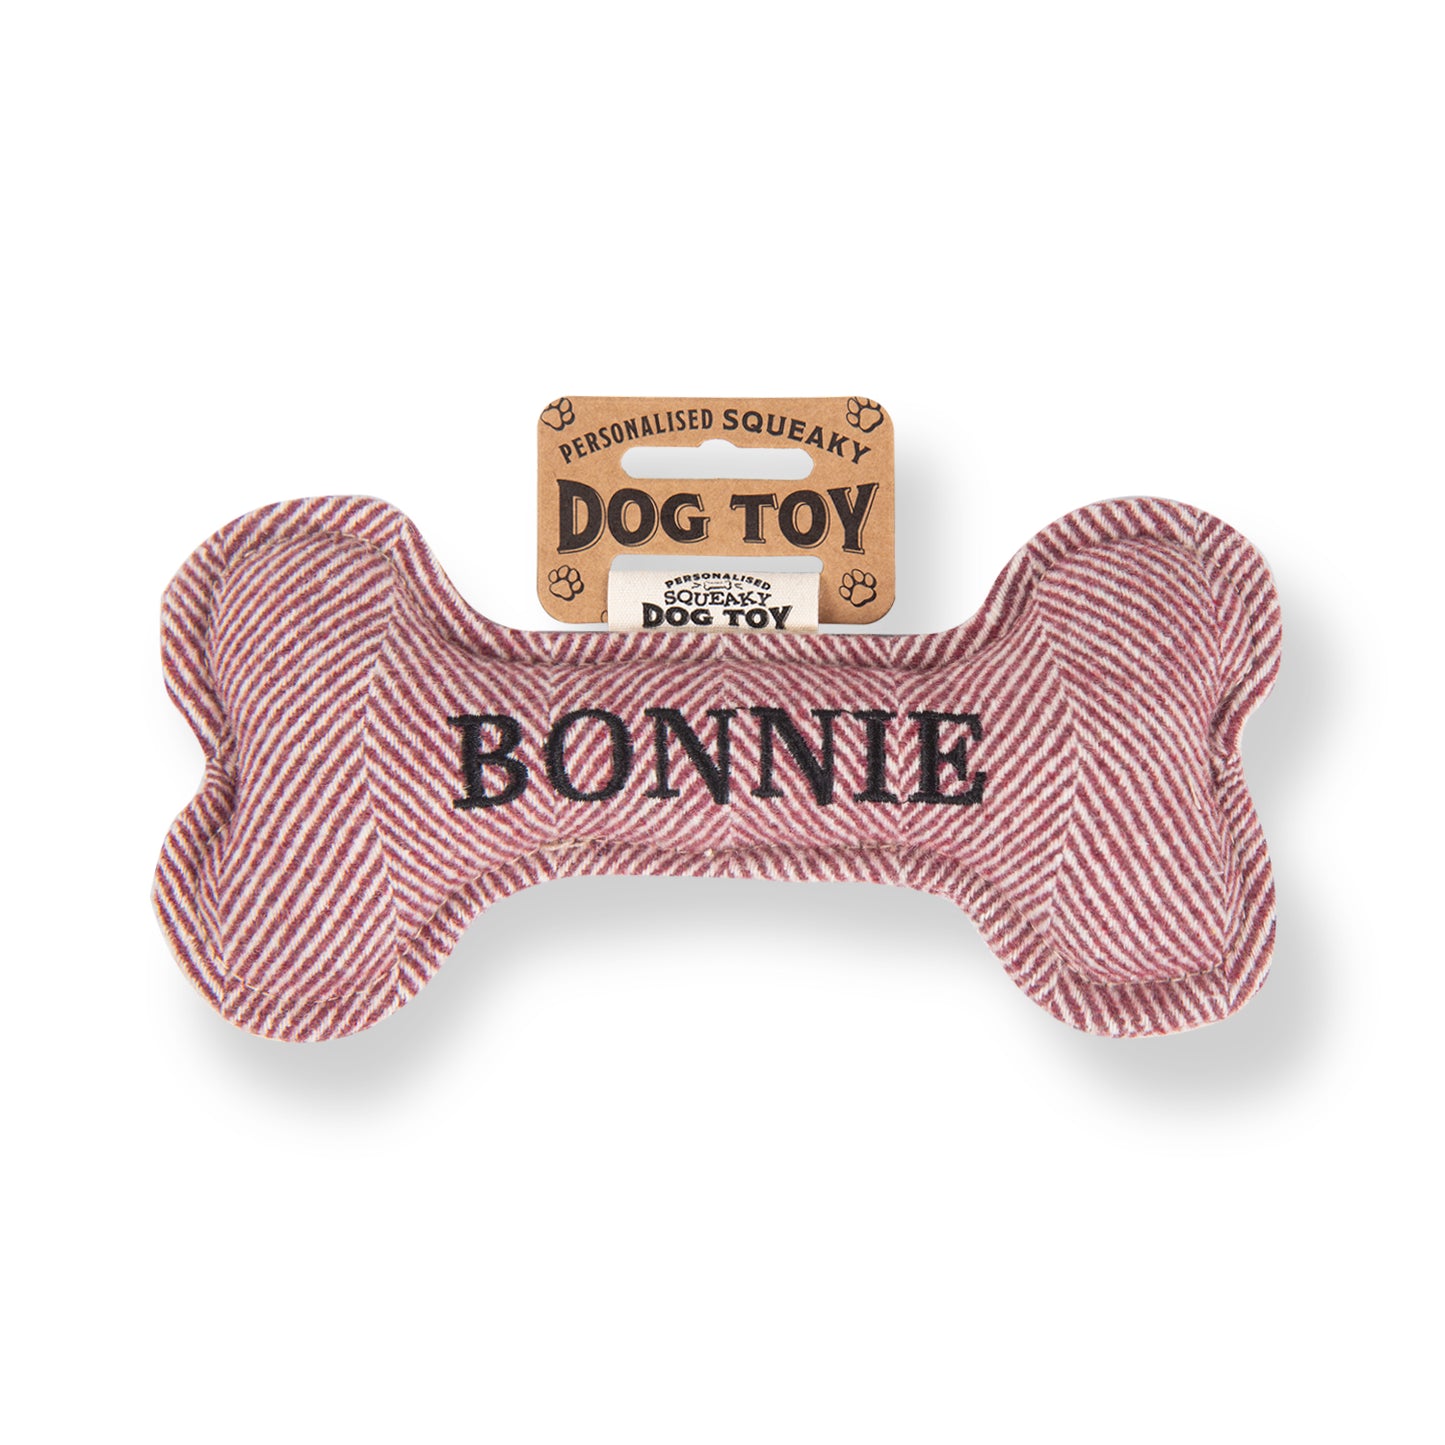 Squeaky Bone Dog Toy - Bonnie